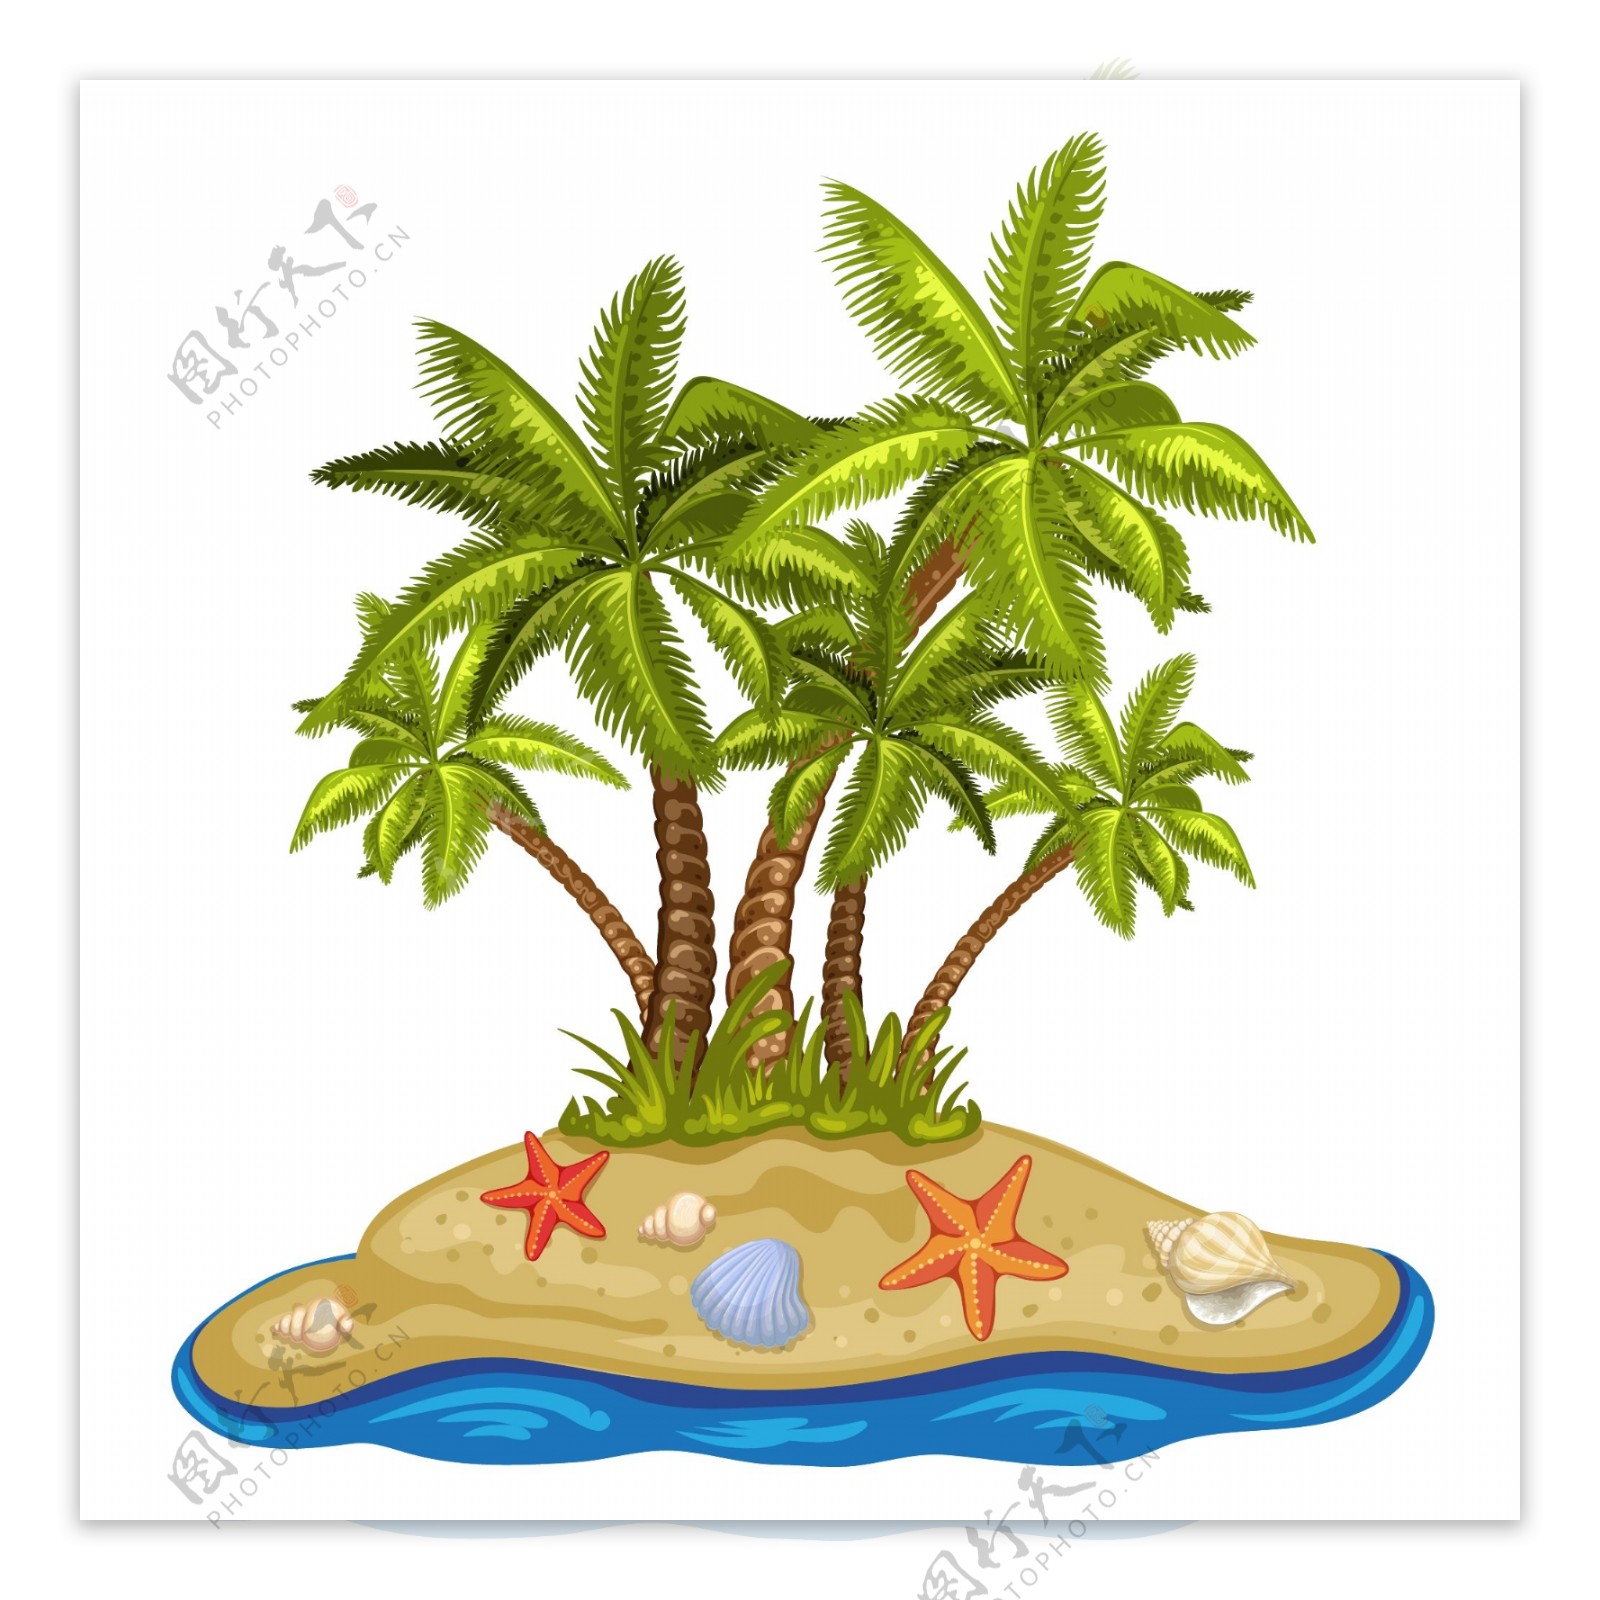 小岛上的椰树